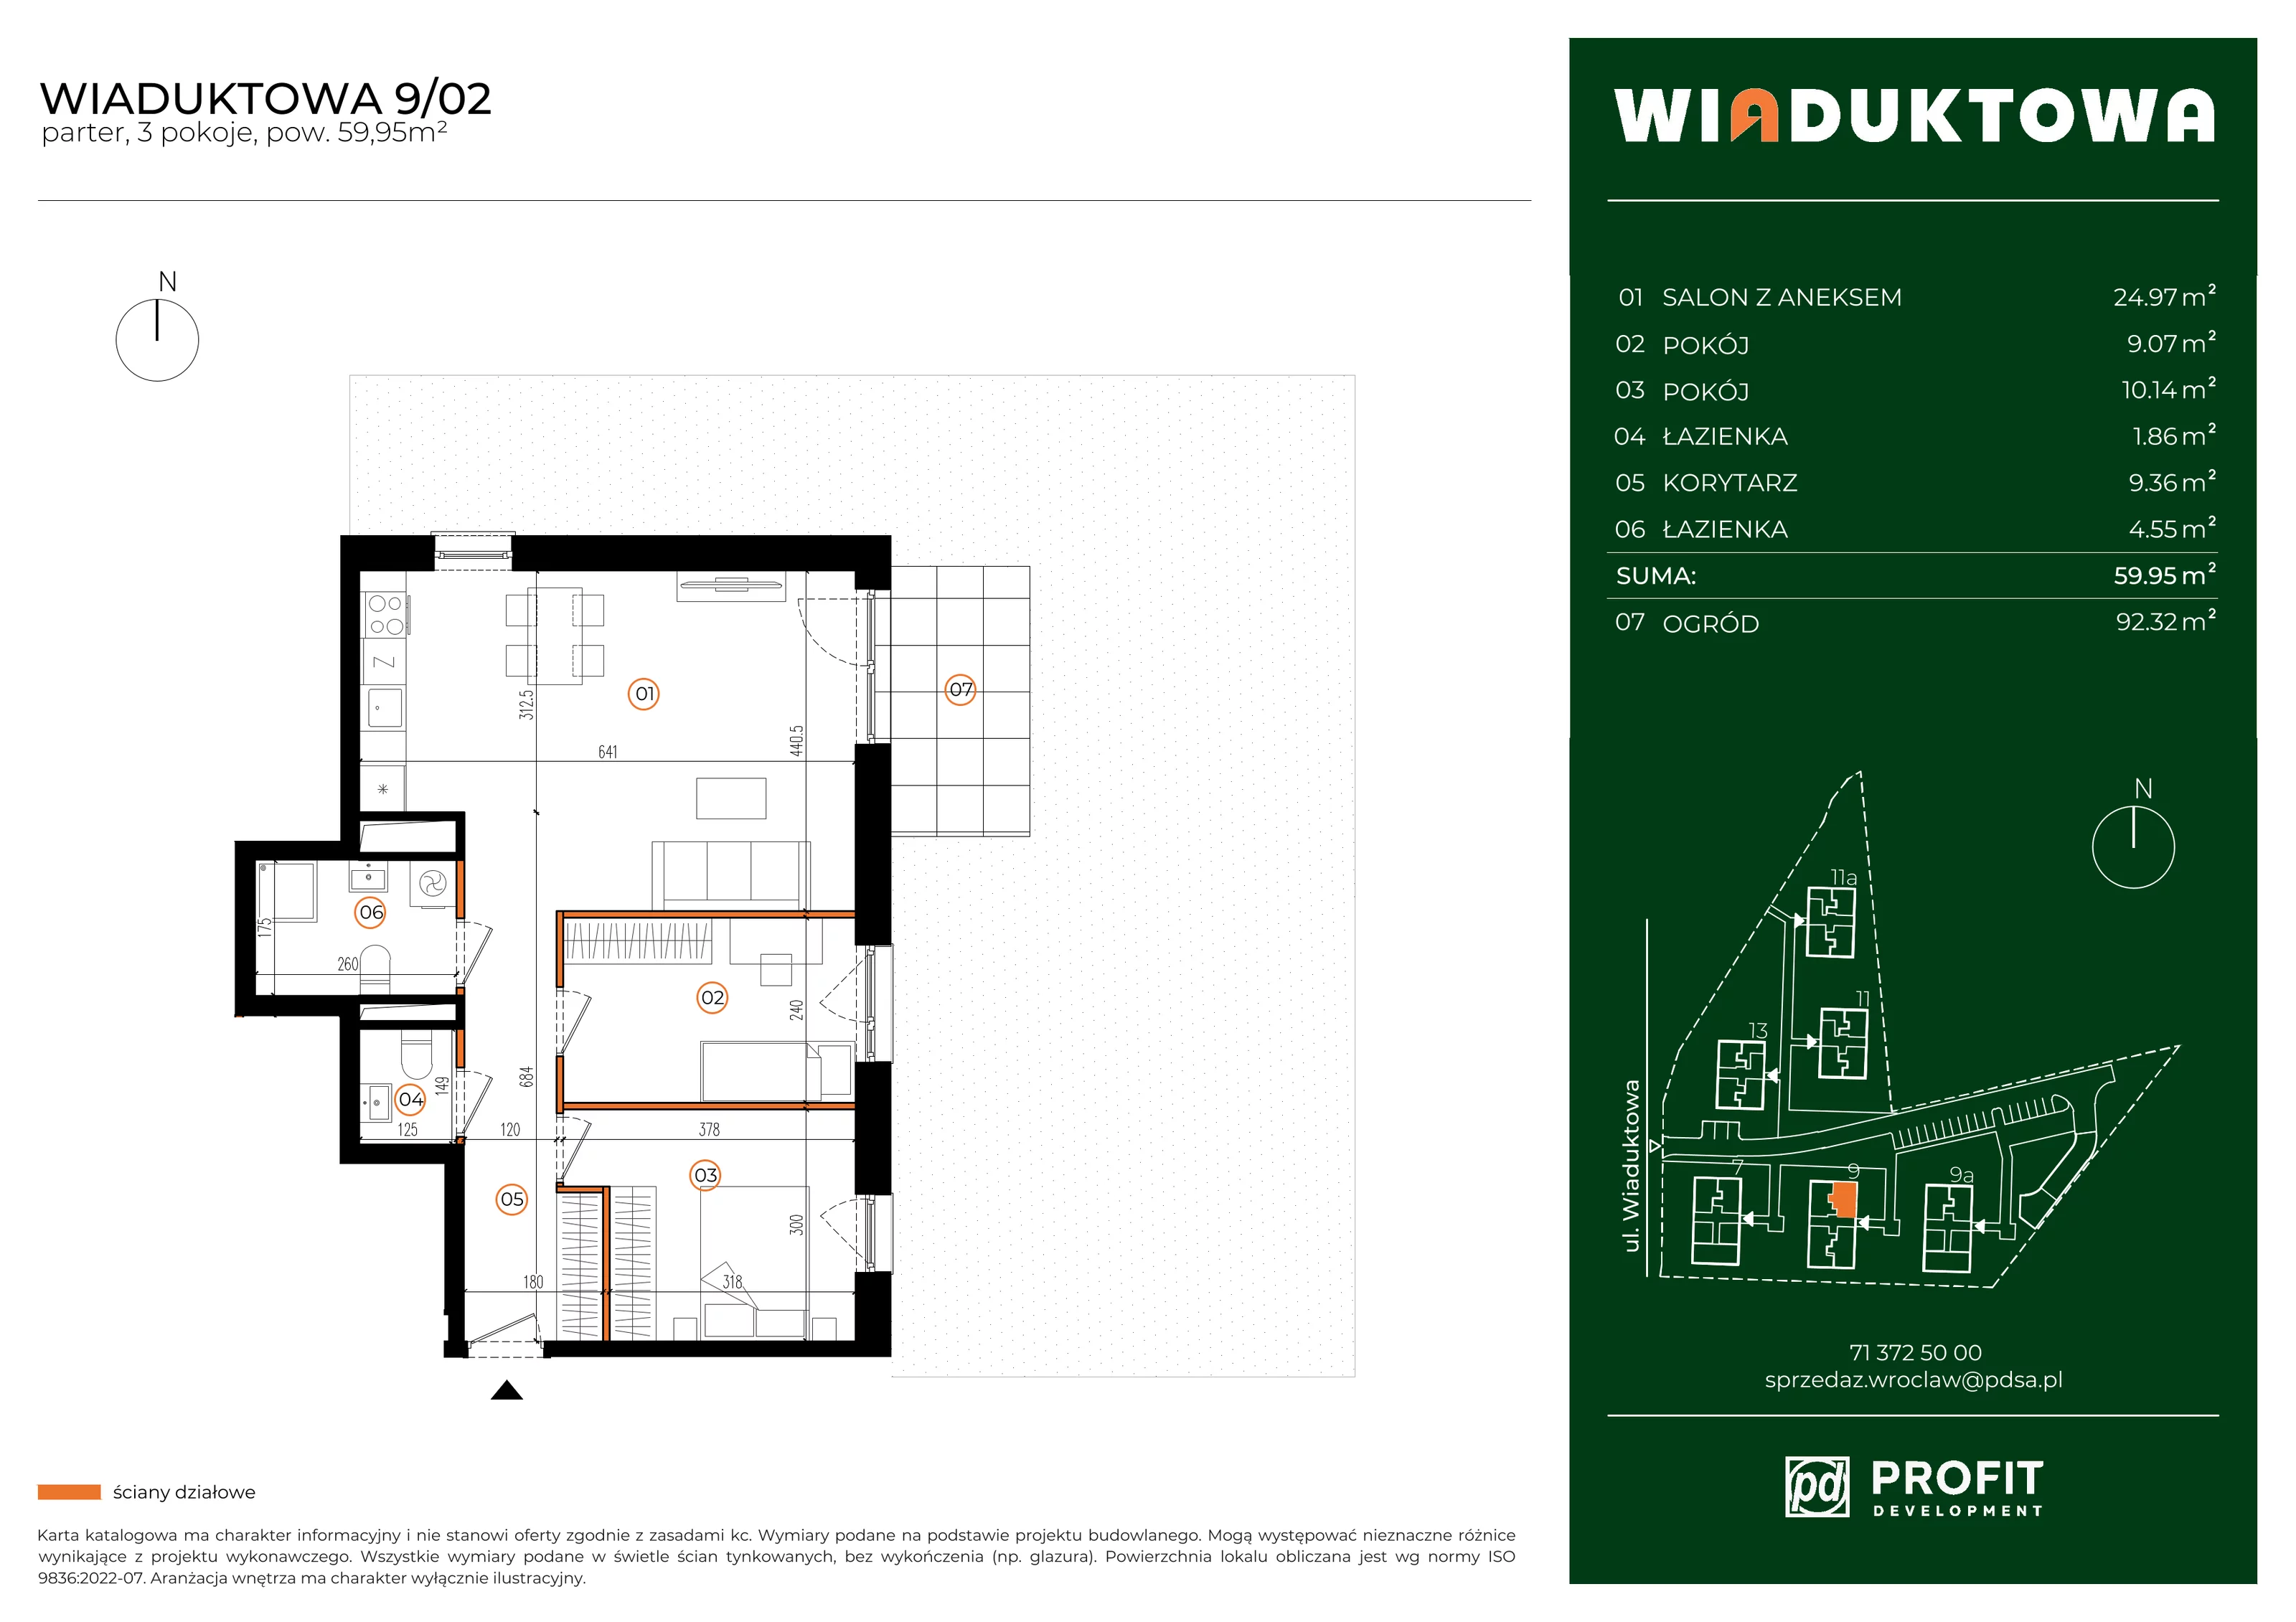 Mieszkanie 59,95 m², parter, oferta nr WI/9/02, Wiaduktowa, Wrocław, Krzyki-Partynice, Krzyki, ul. Wiaduktowa